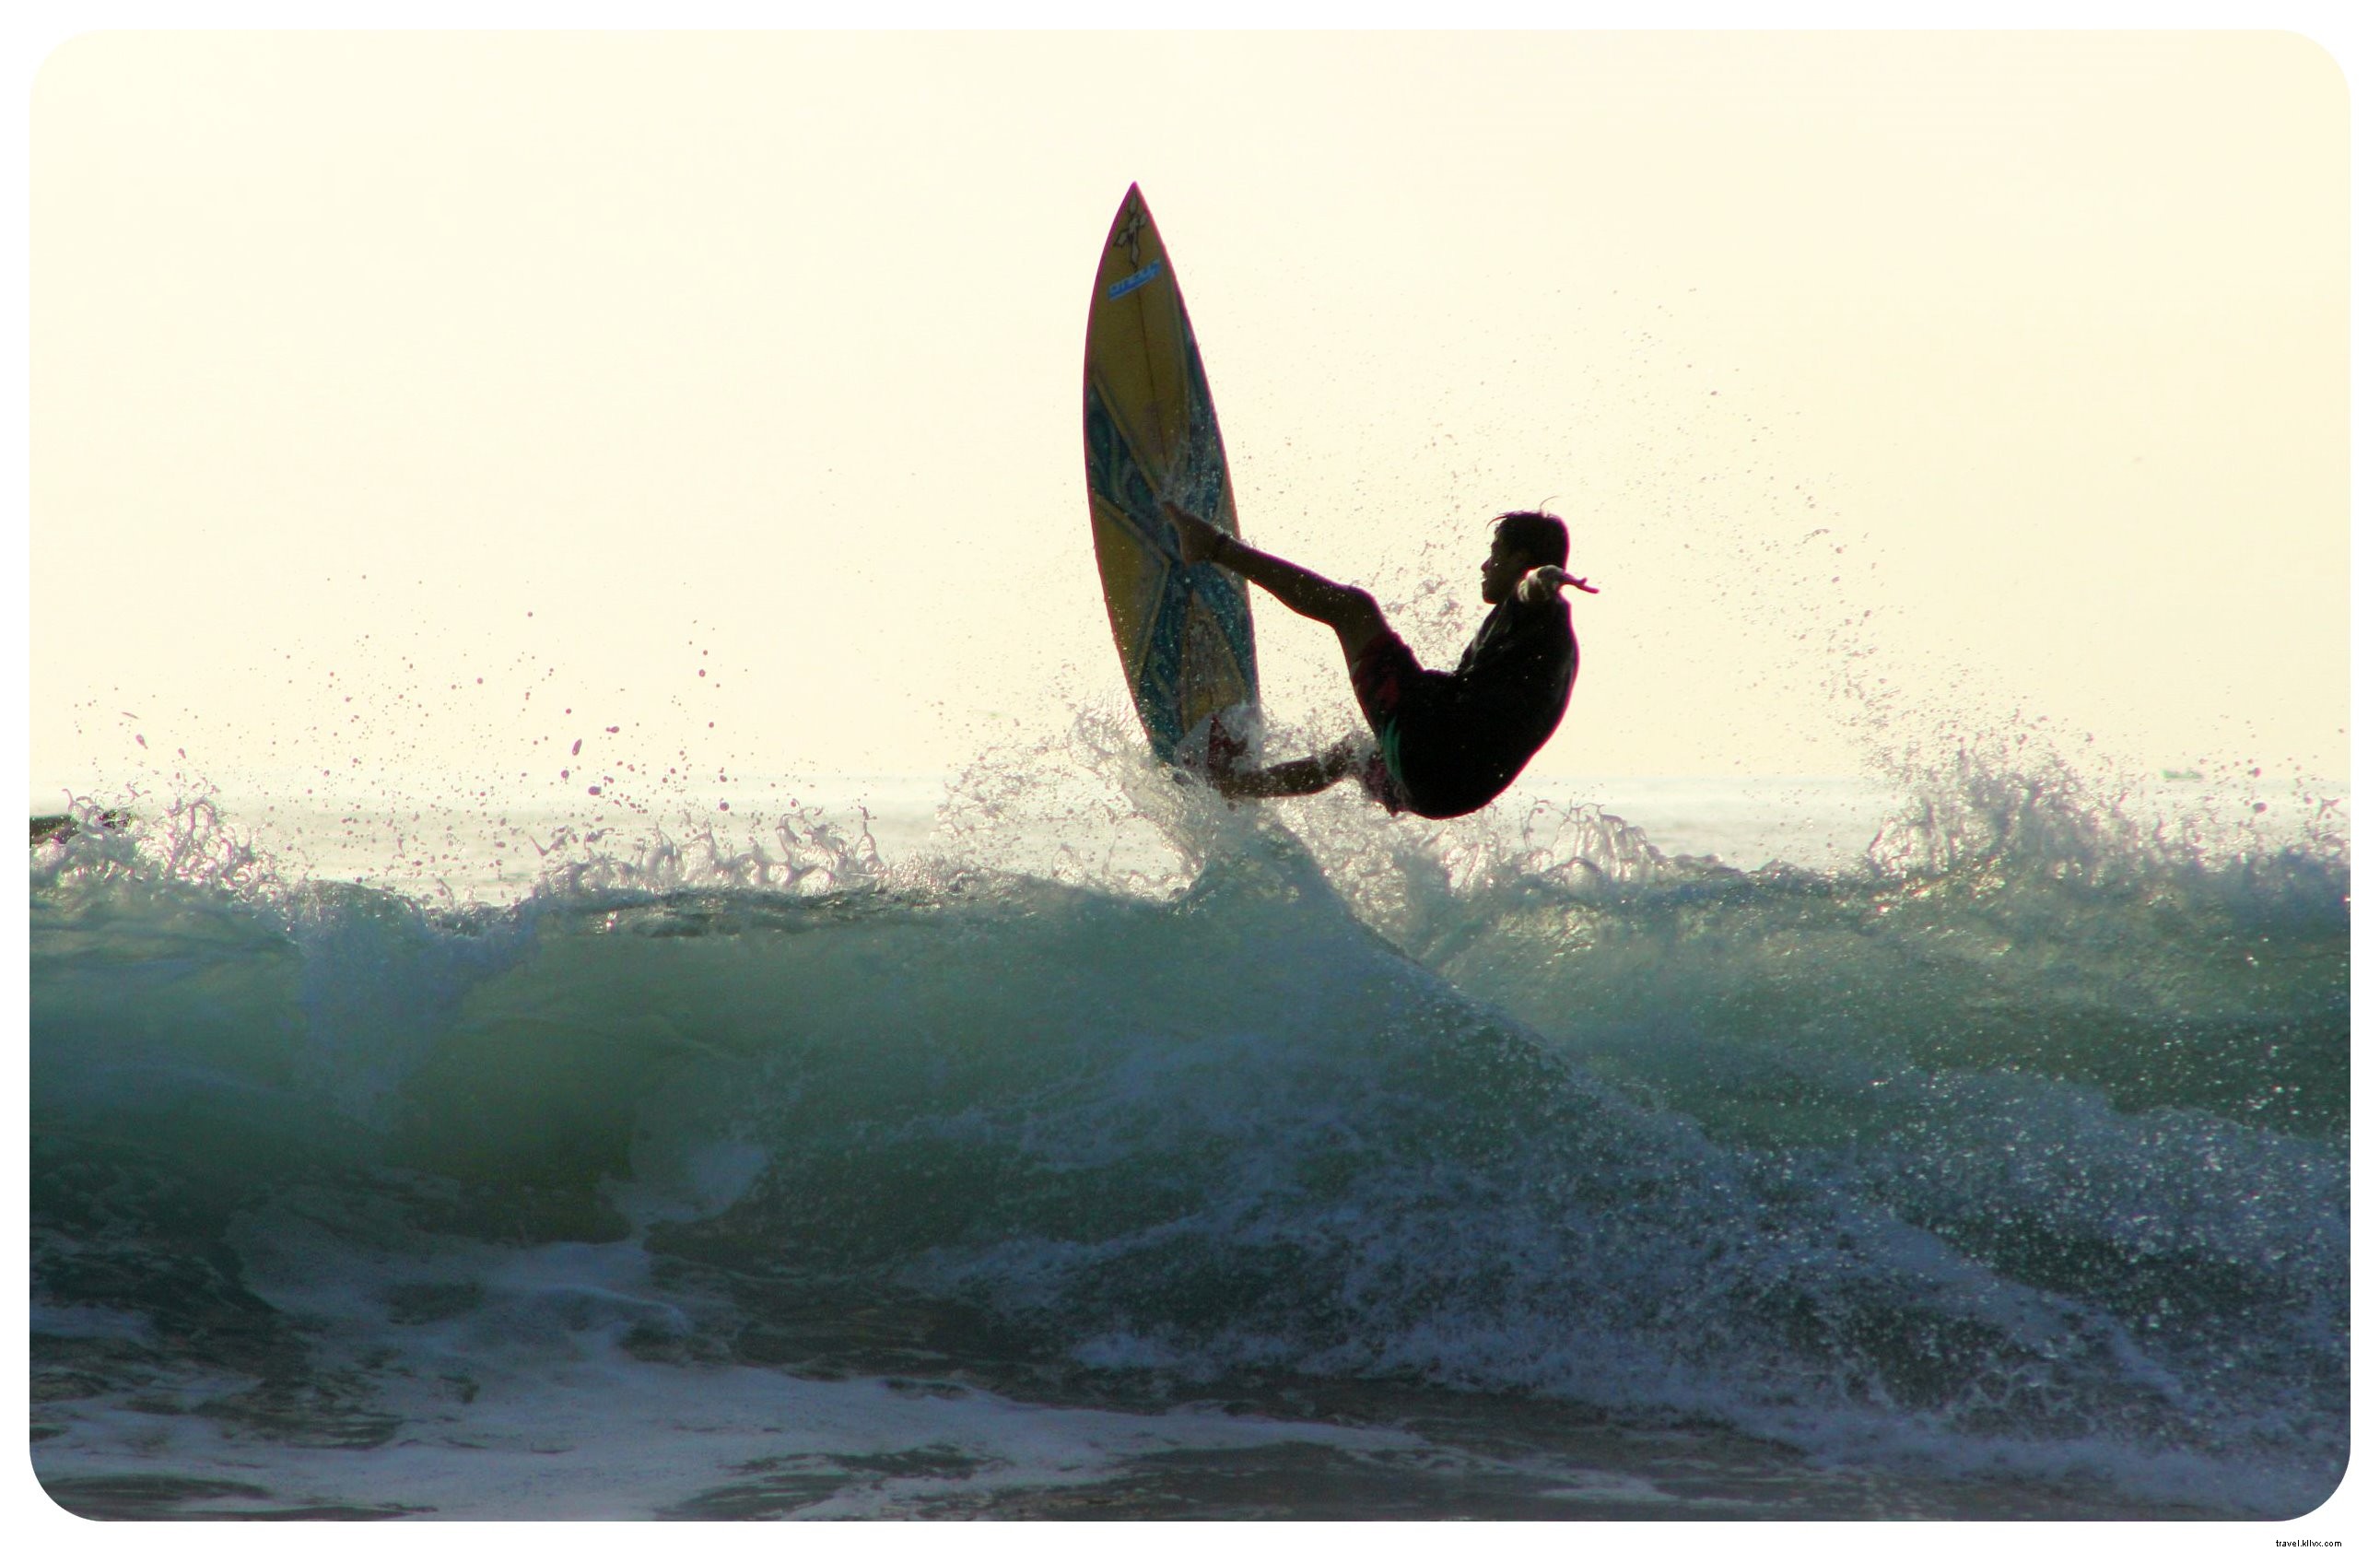 Acheter votre première planche de surf ? Ces facteurs vont affiner votre recherche